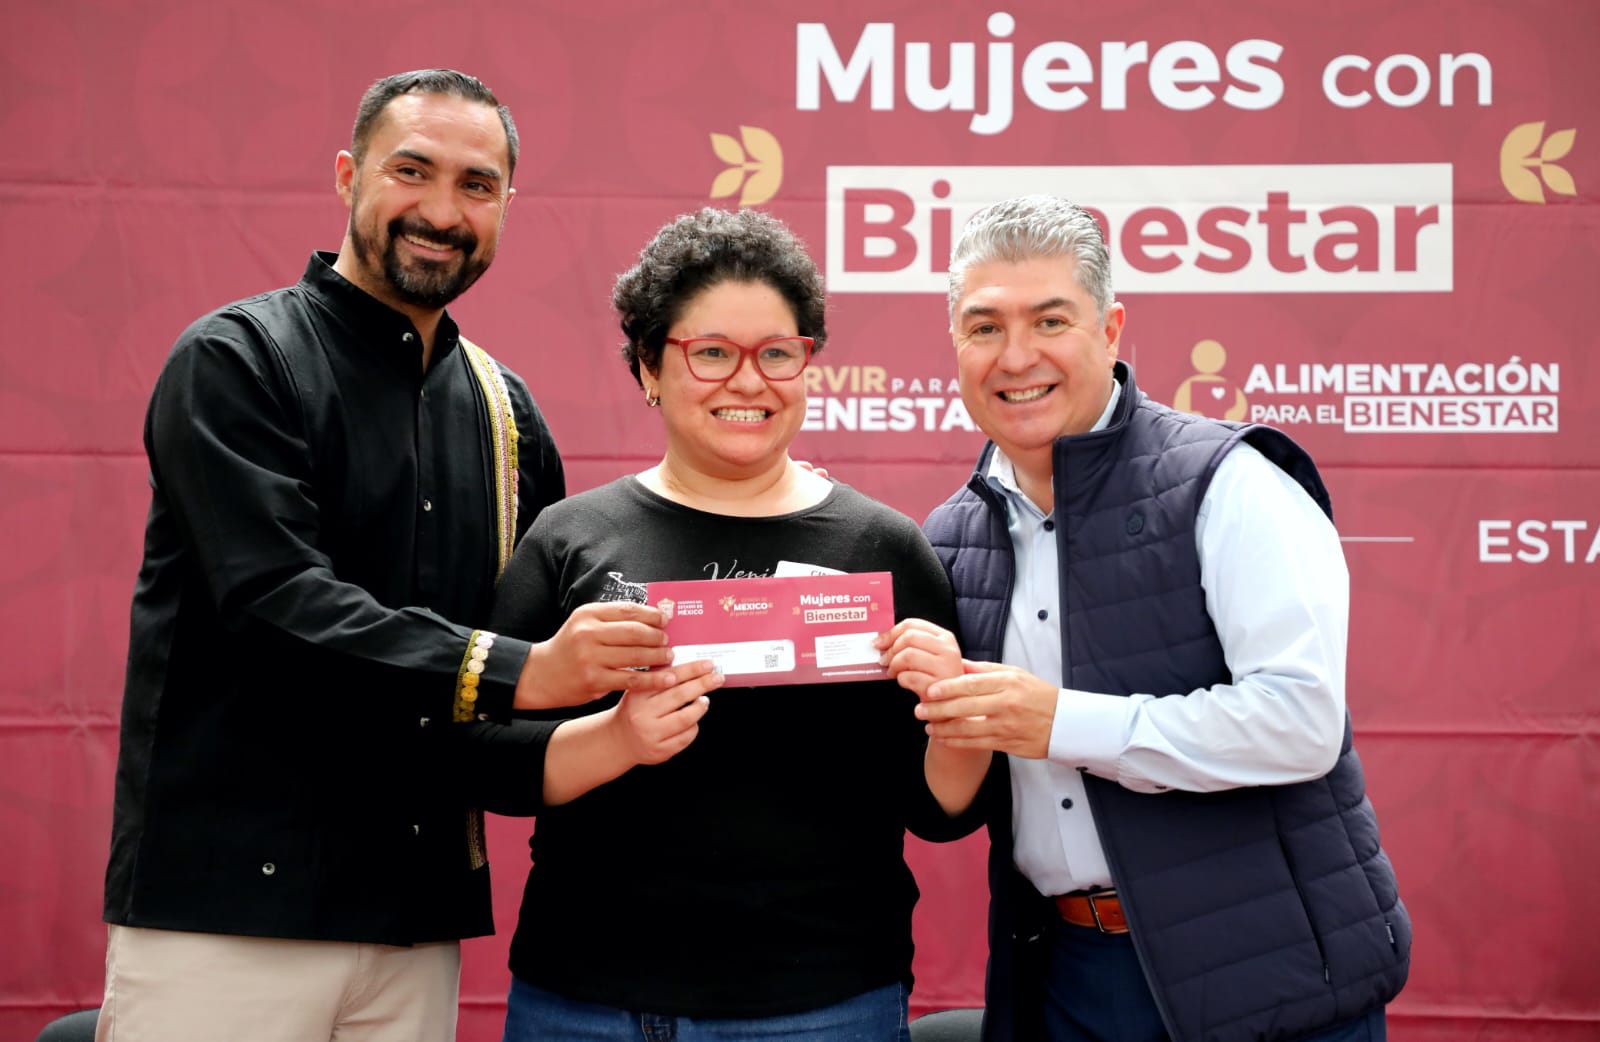 Entregan tarjetas del Programa Mujeres con Bienestar en Ecatepec